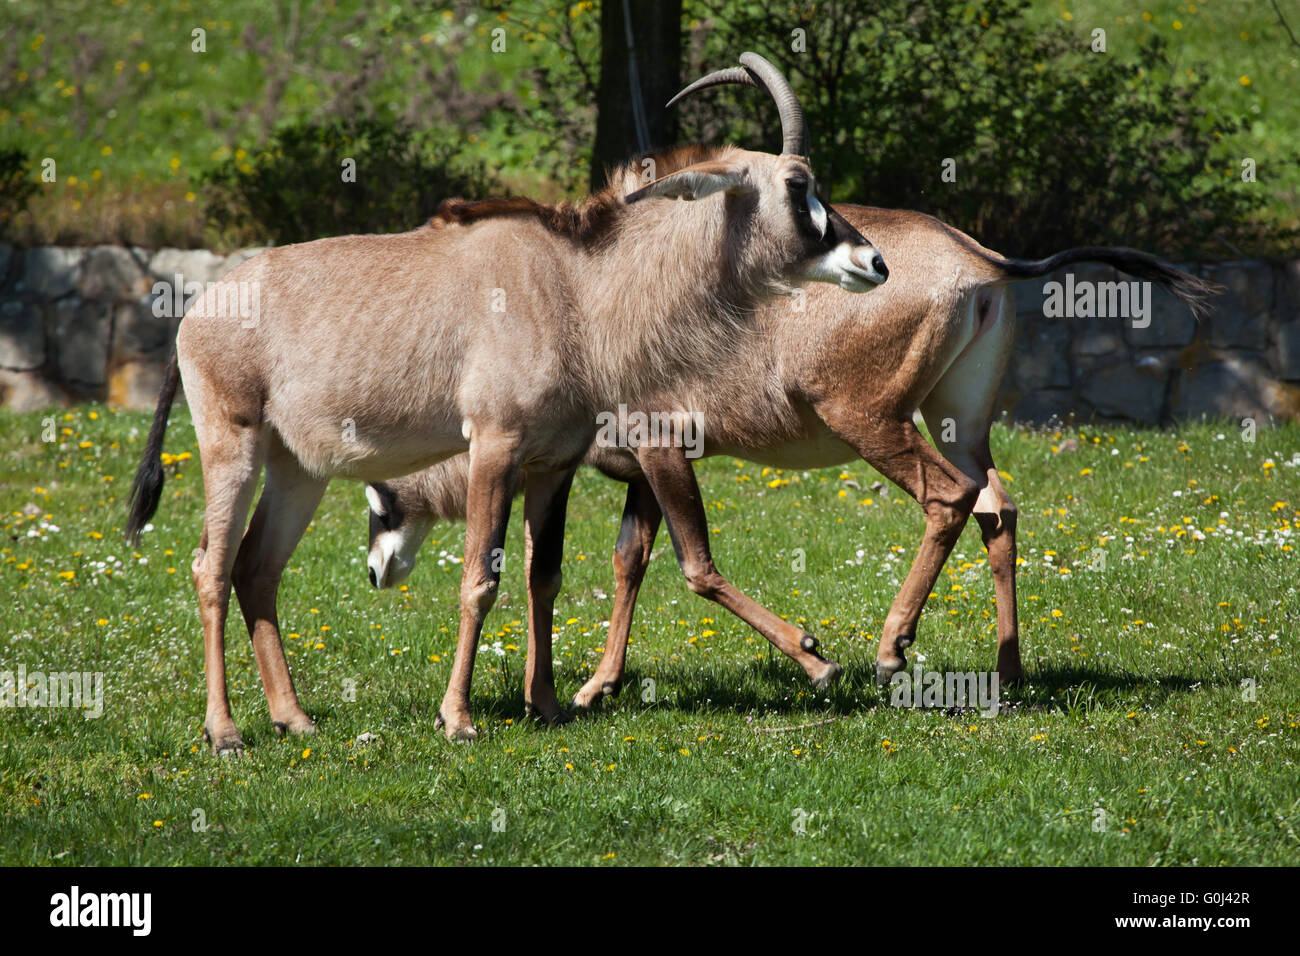 L'antilope rouanne (Hippotragus equinus) au Zoo de Dvur Kralove, République tchèque. Banque D'Images